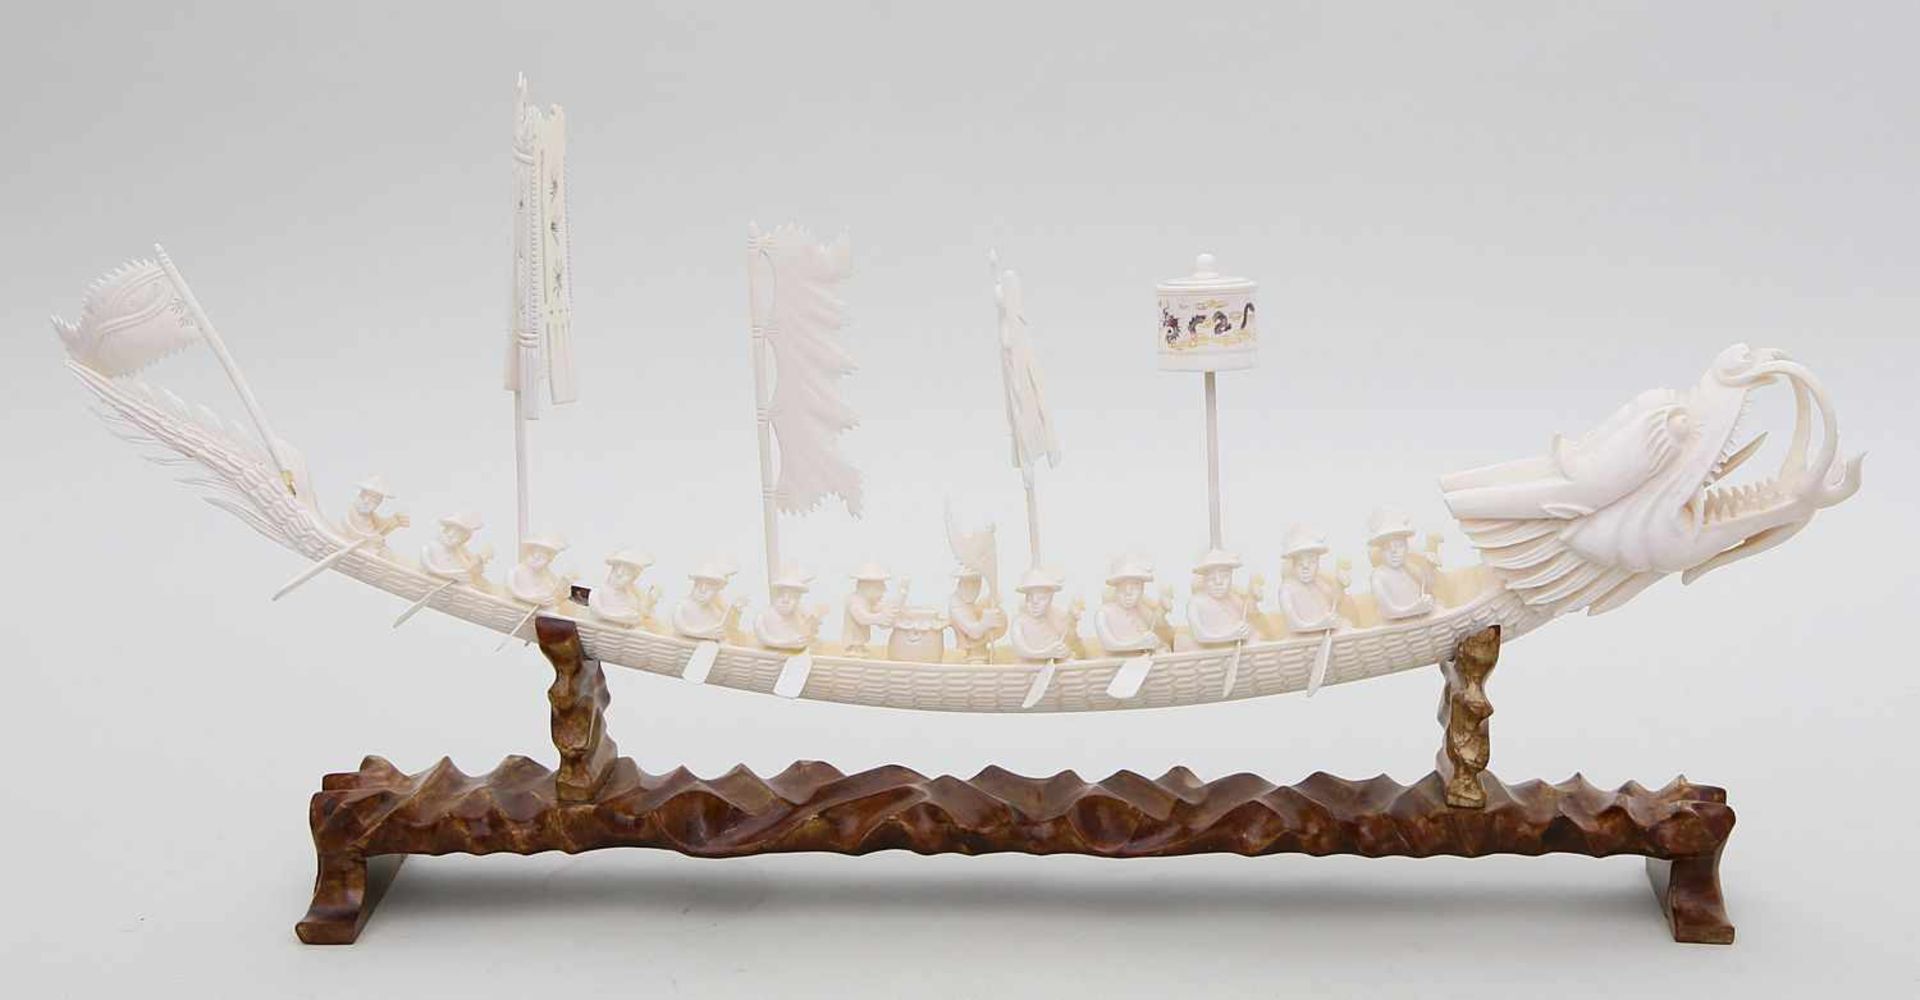 Große Skulptur "Drachenboot".Elfenbein, vollplastisch geschnitzt. Boot mit 23 Figuren und Aufbauten. - Bild 2 aus 2